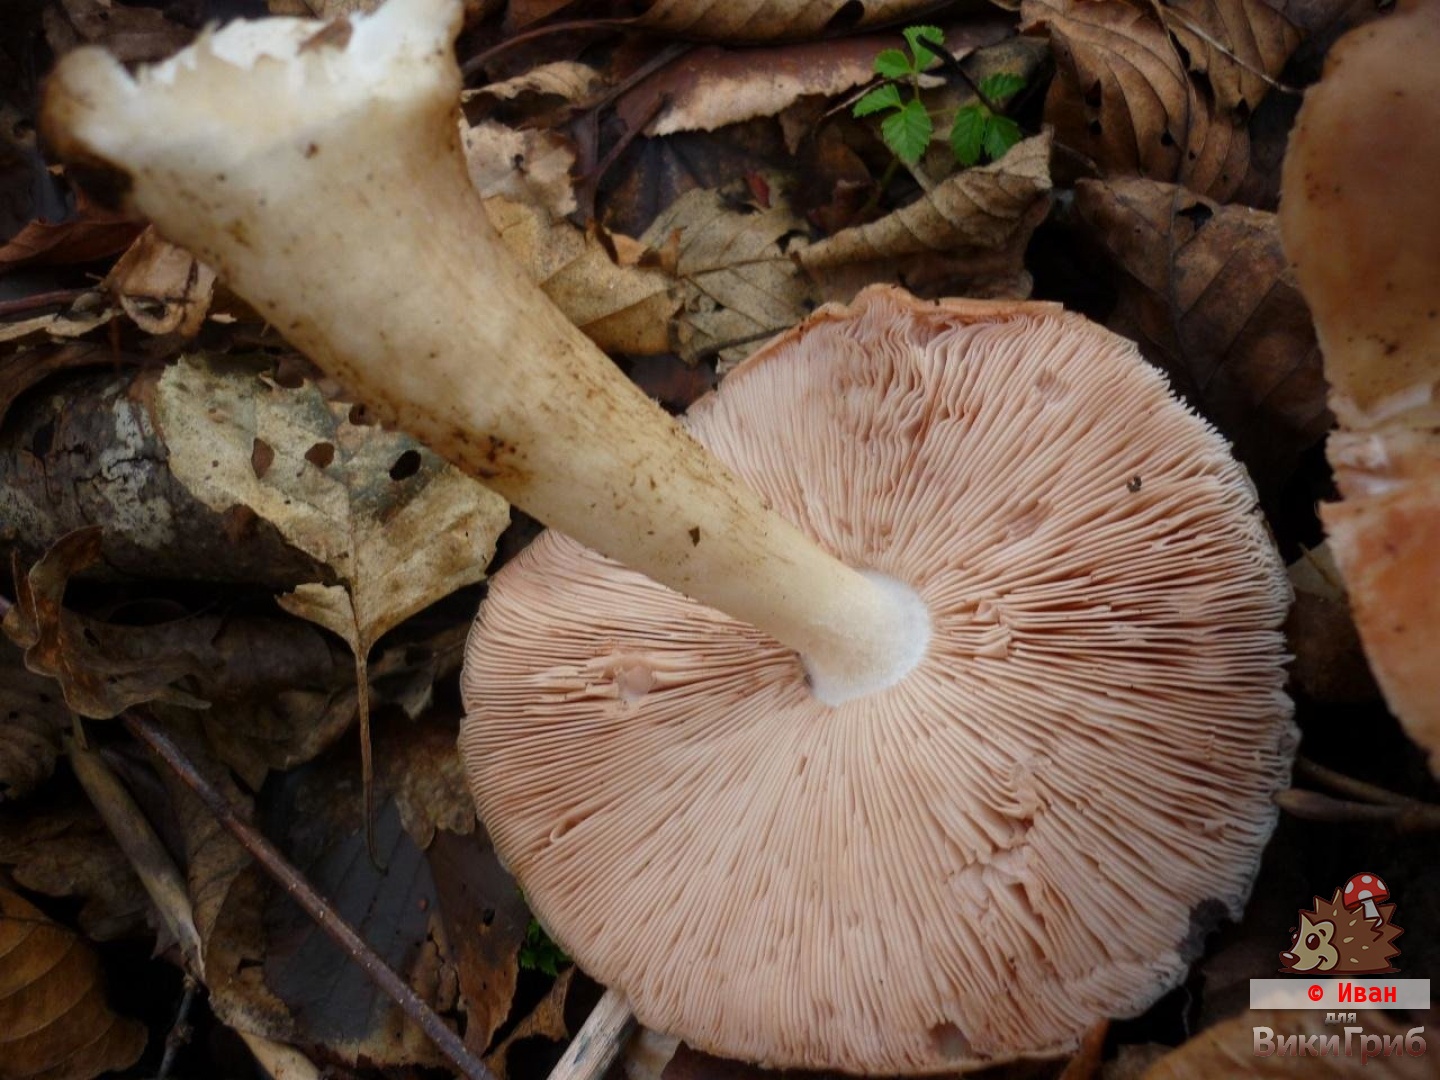 Pluteus cervinus - Олений гриб